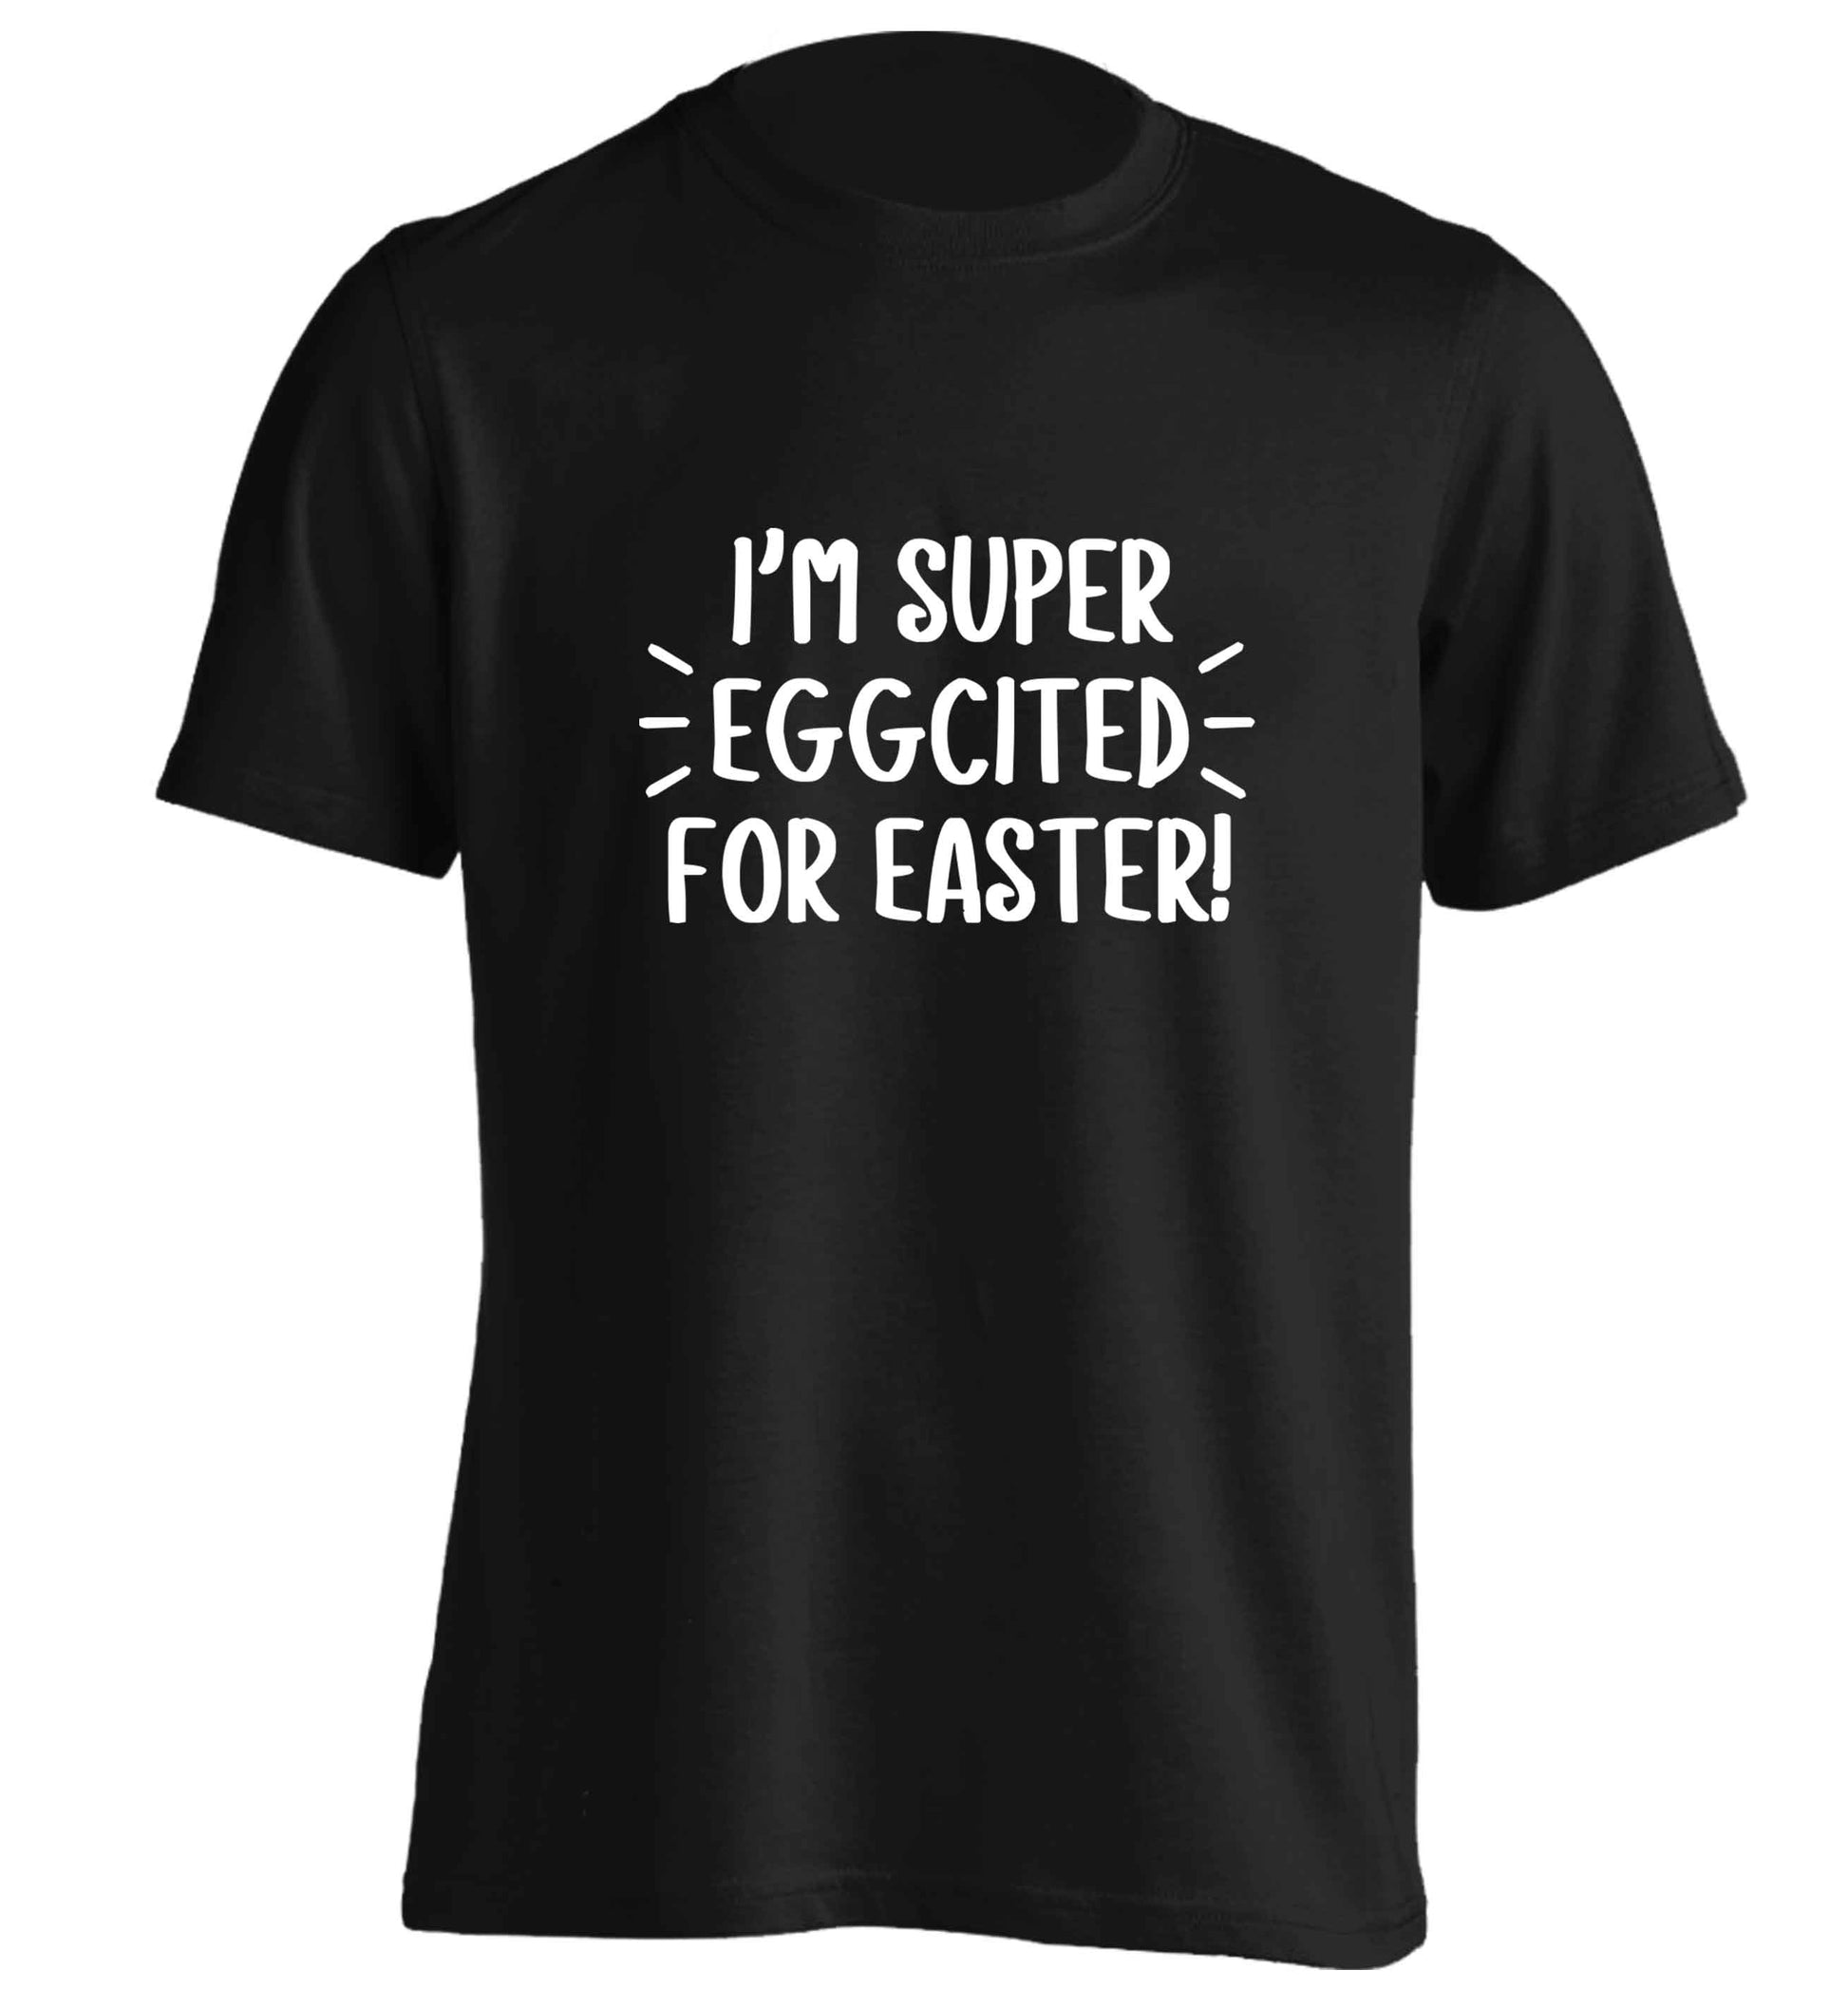 I'm super eggcited for Easter adults unisex black Tshirt 2XL